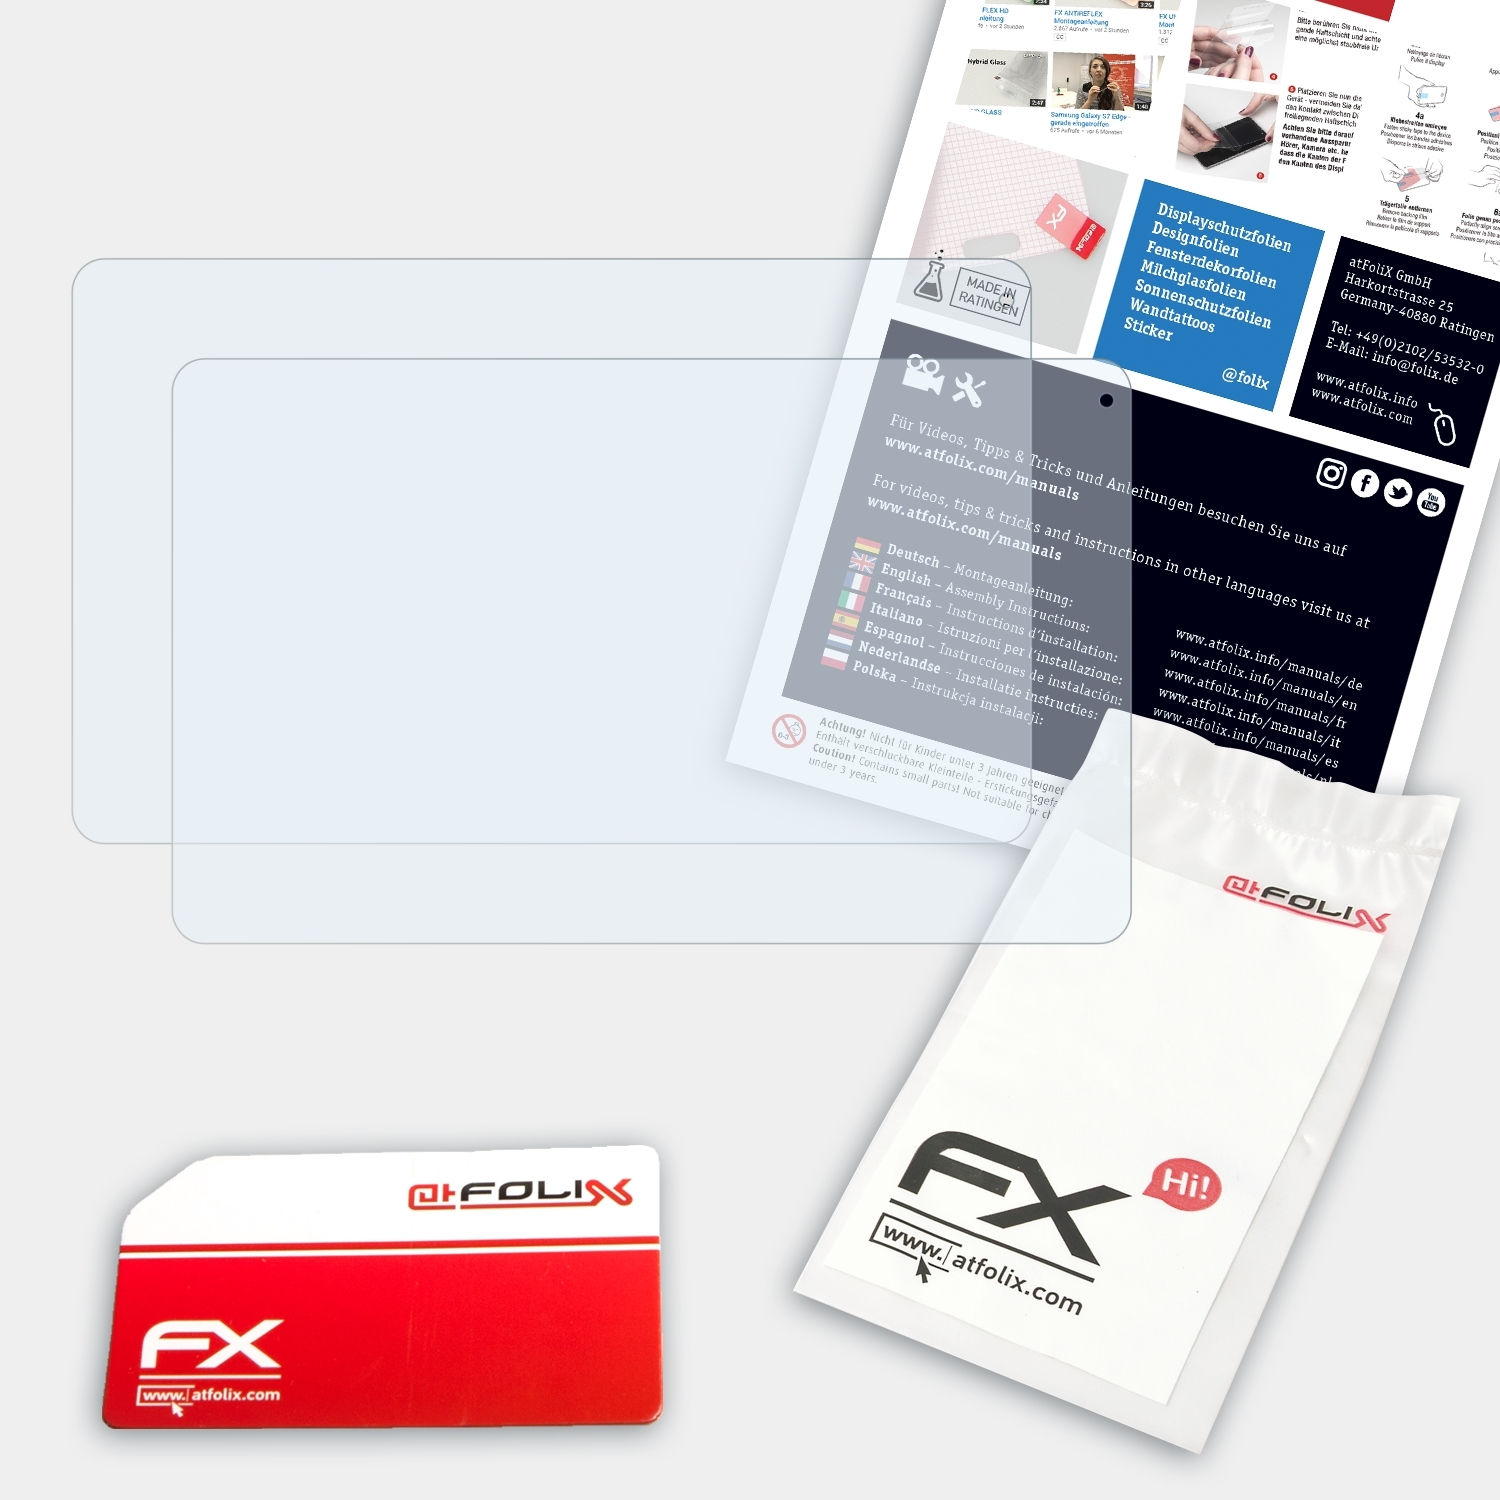 ATFOLIX 2x Displayschutz(für Archos FX-Clear 101 Platinum 3G)